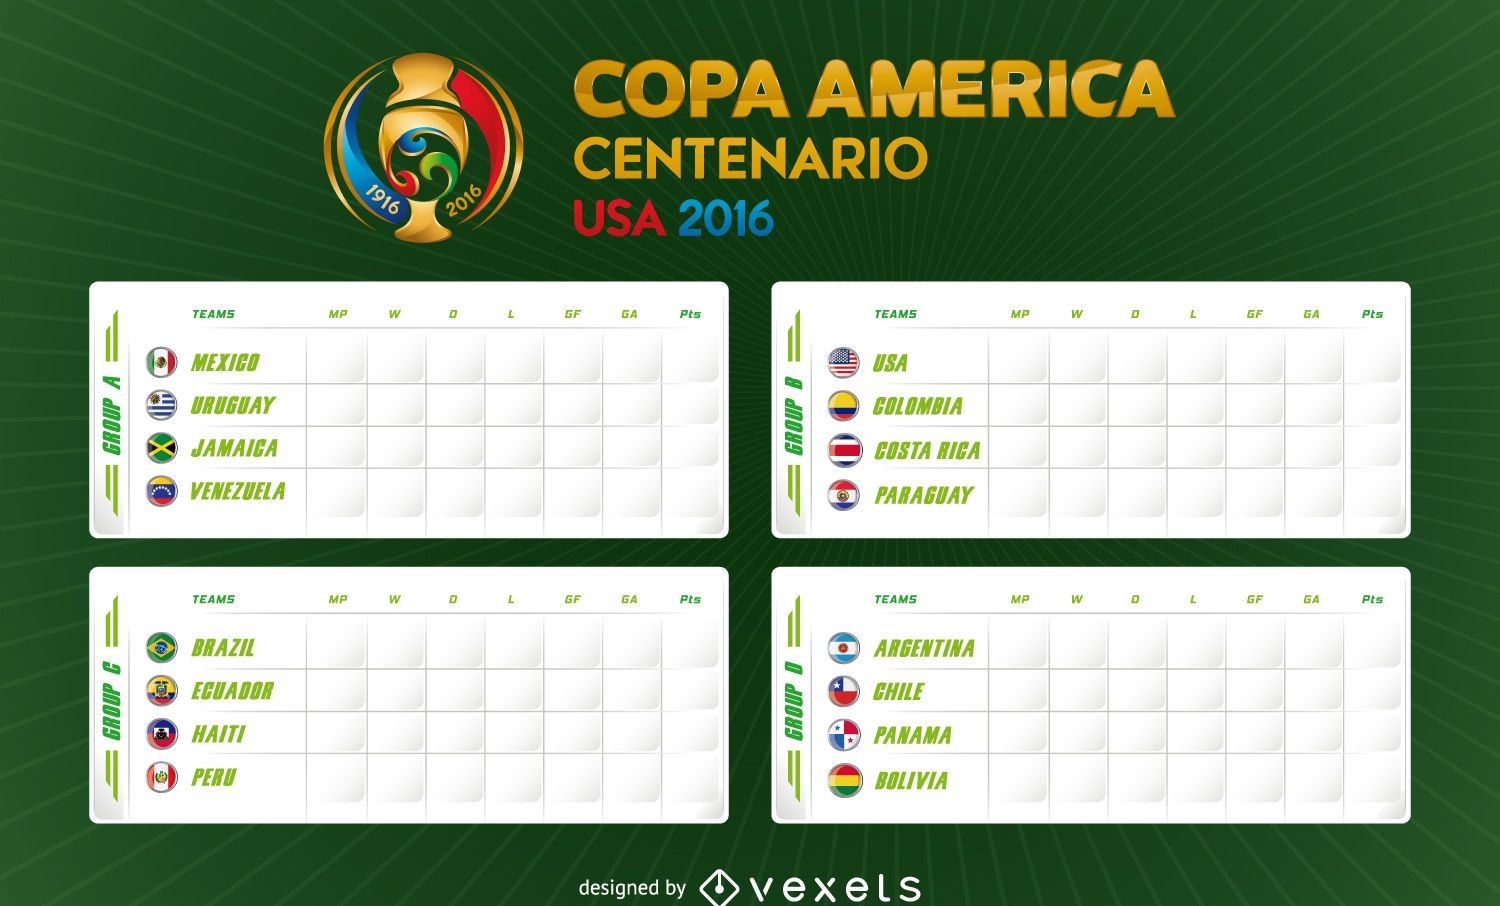 Calendario de la Copa Am?rica 2016